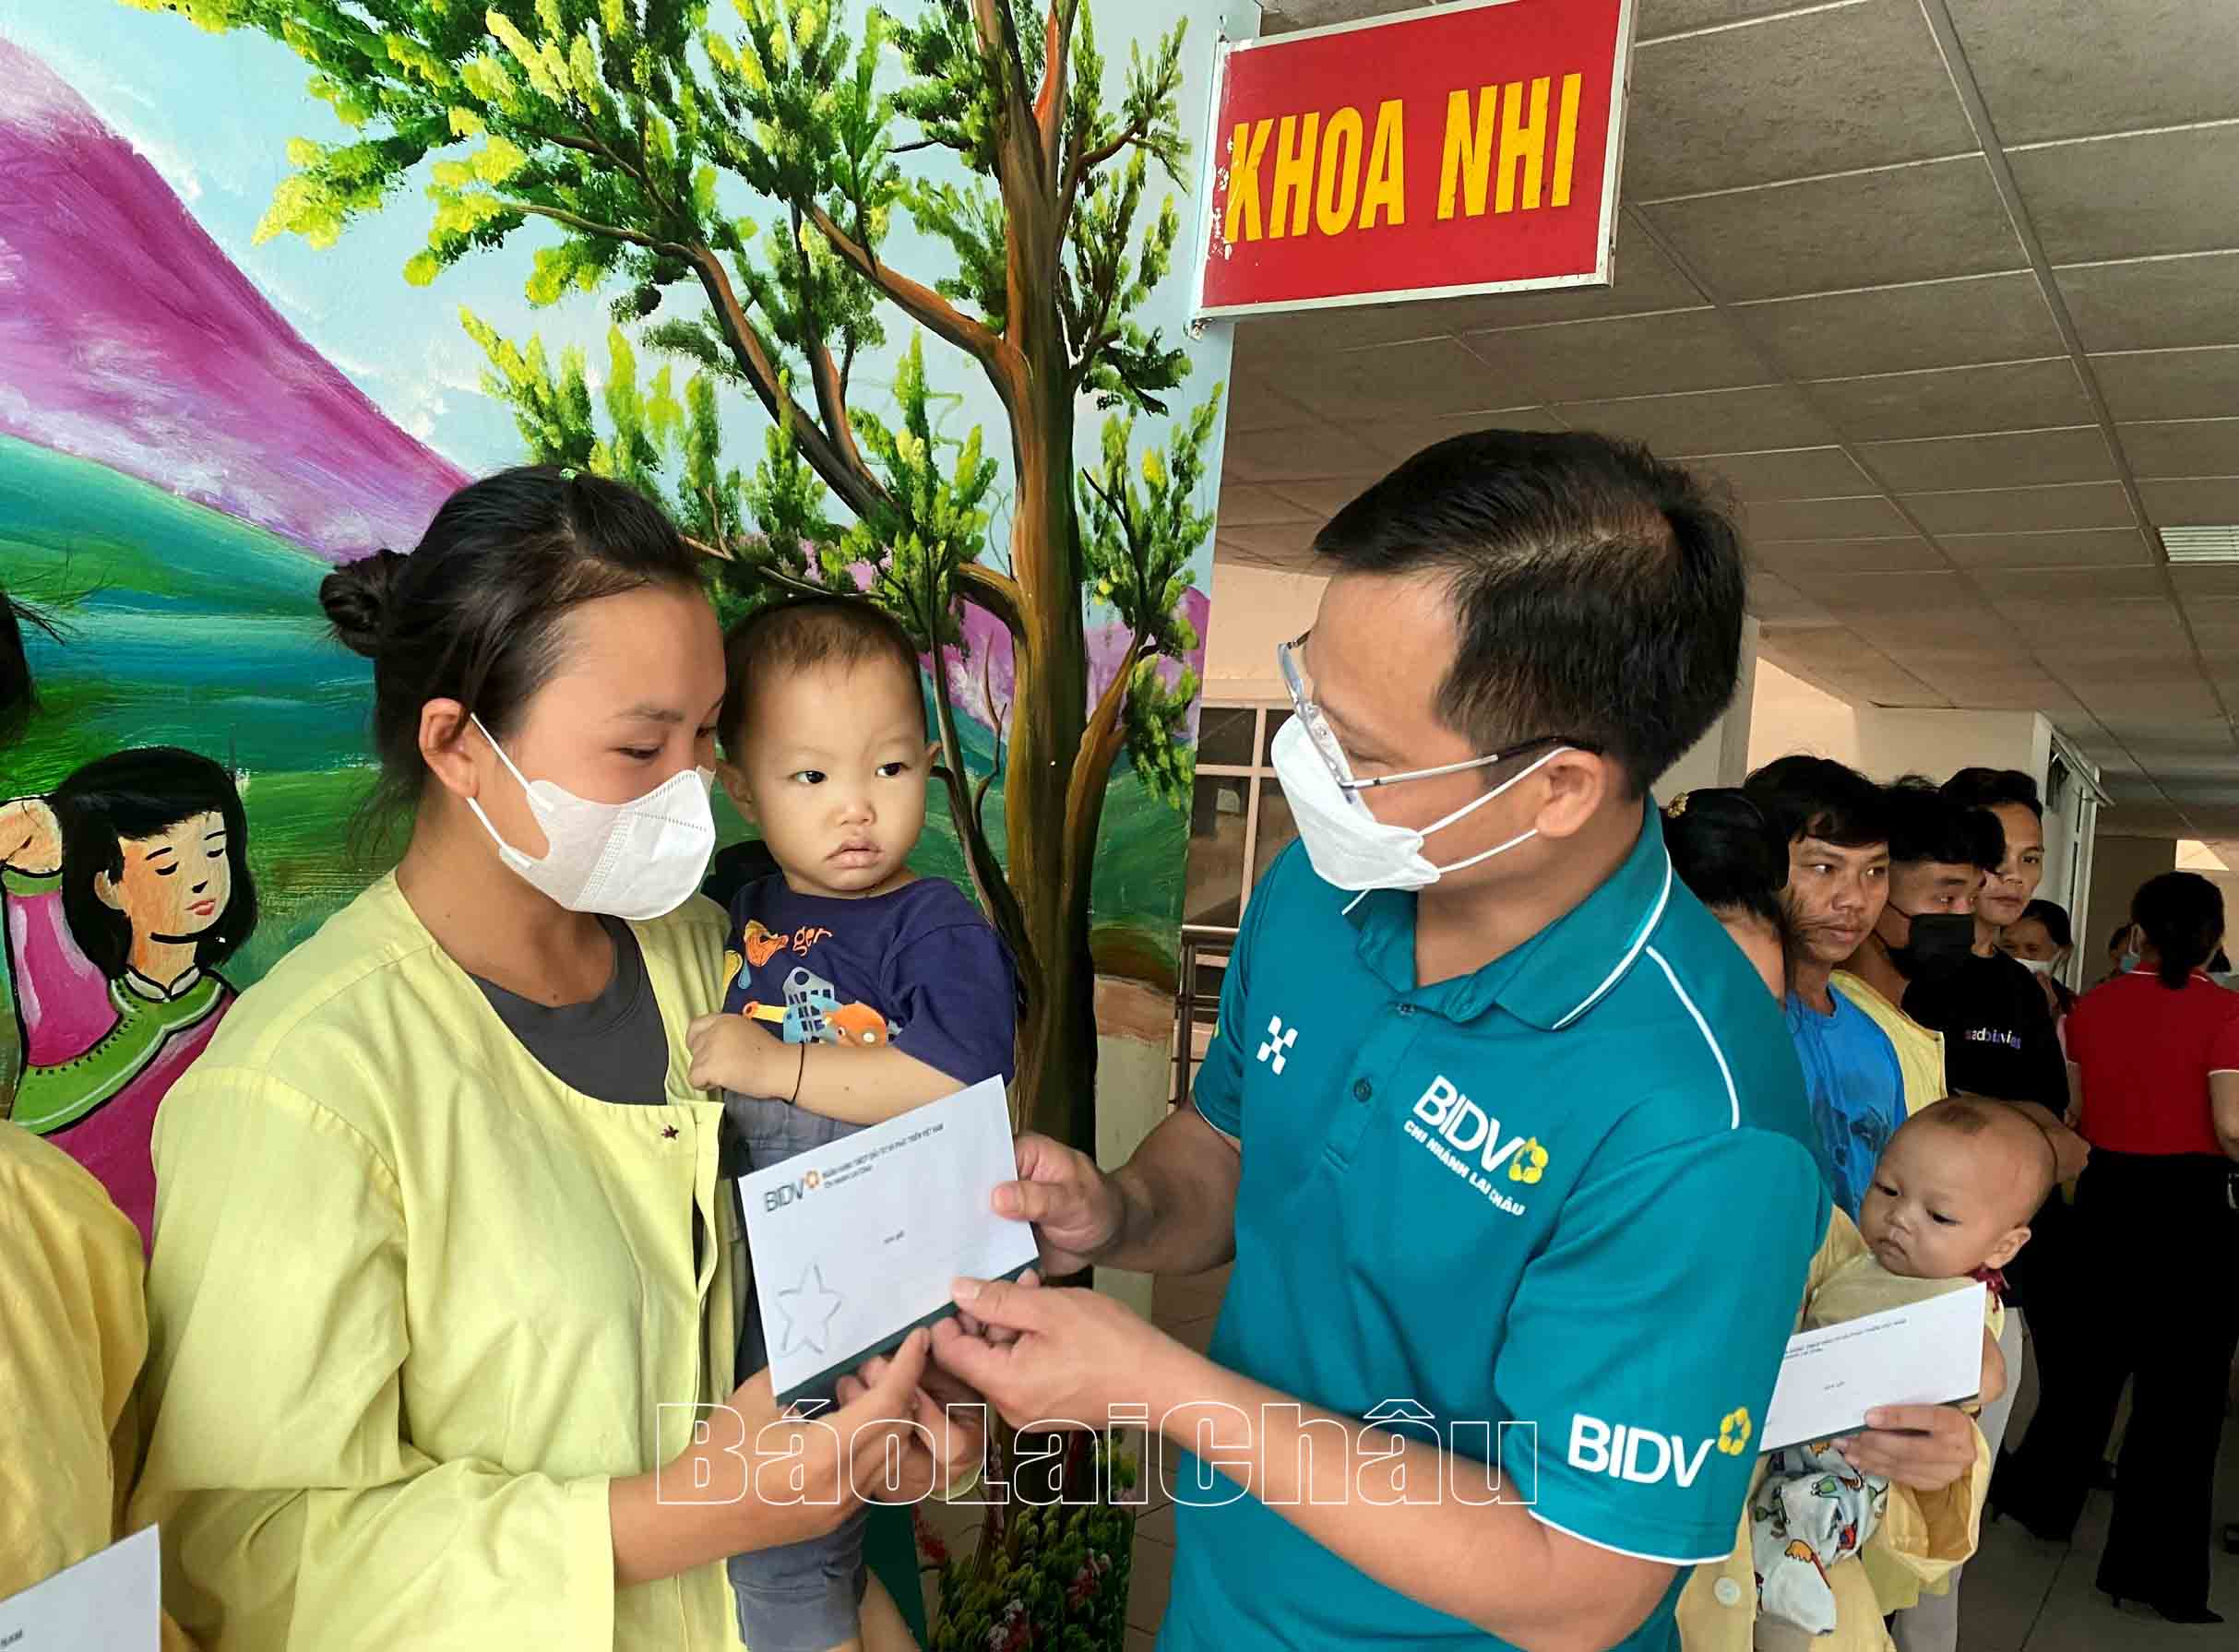 Лидеры BIDV Lai Chau дарят подарки детям с тяжелыми обстоятельствами, которые лечатся в провинциальной больнице общего профиля.